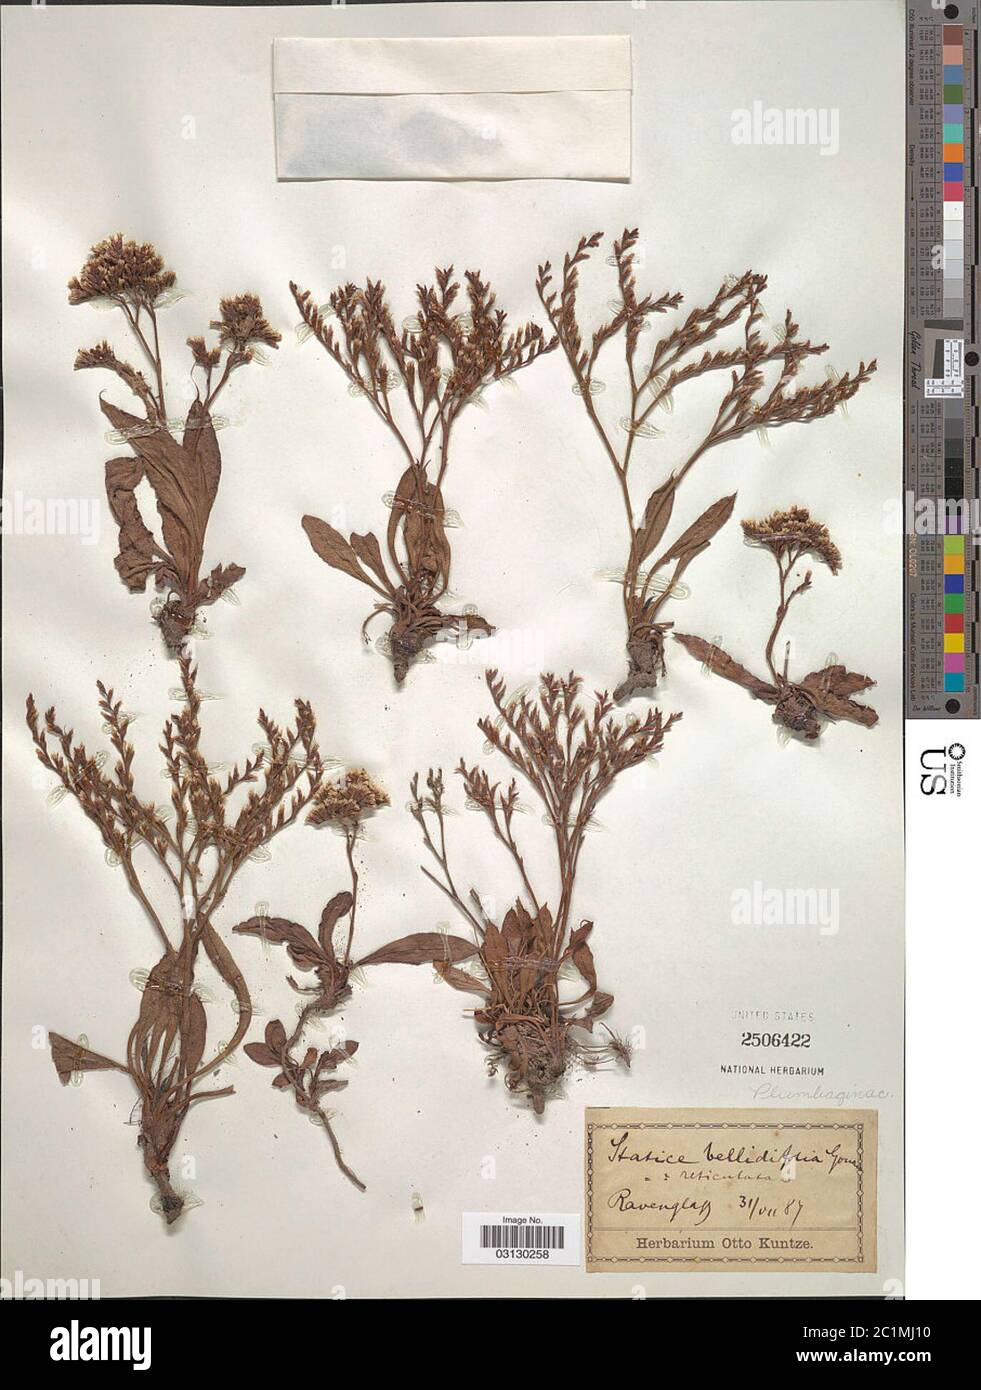 Limonium bellidifolium Gouan Dumort Limonium bellidifolium Gouan Dumort. Stock Photo